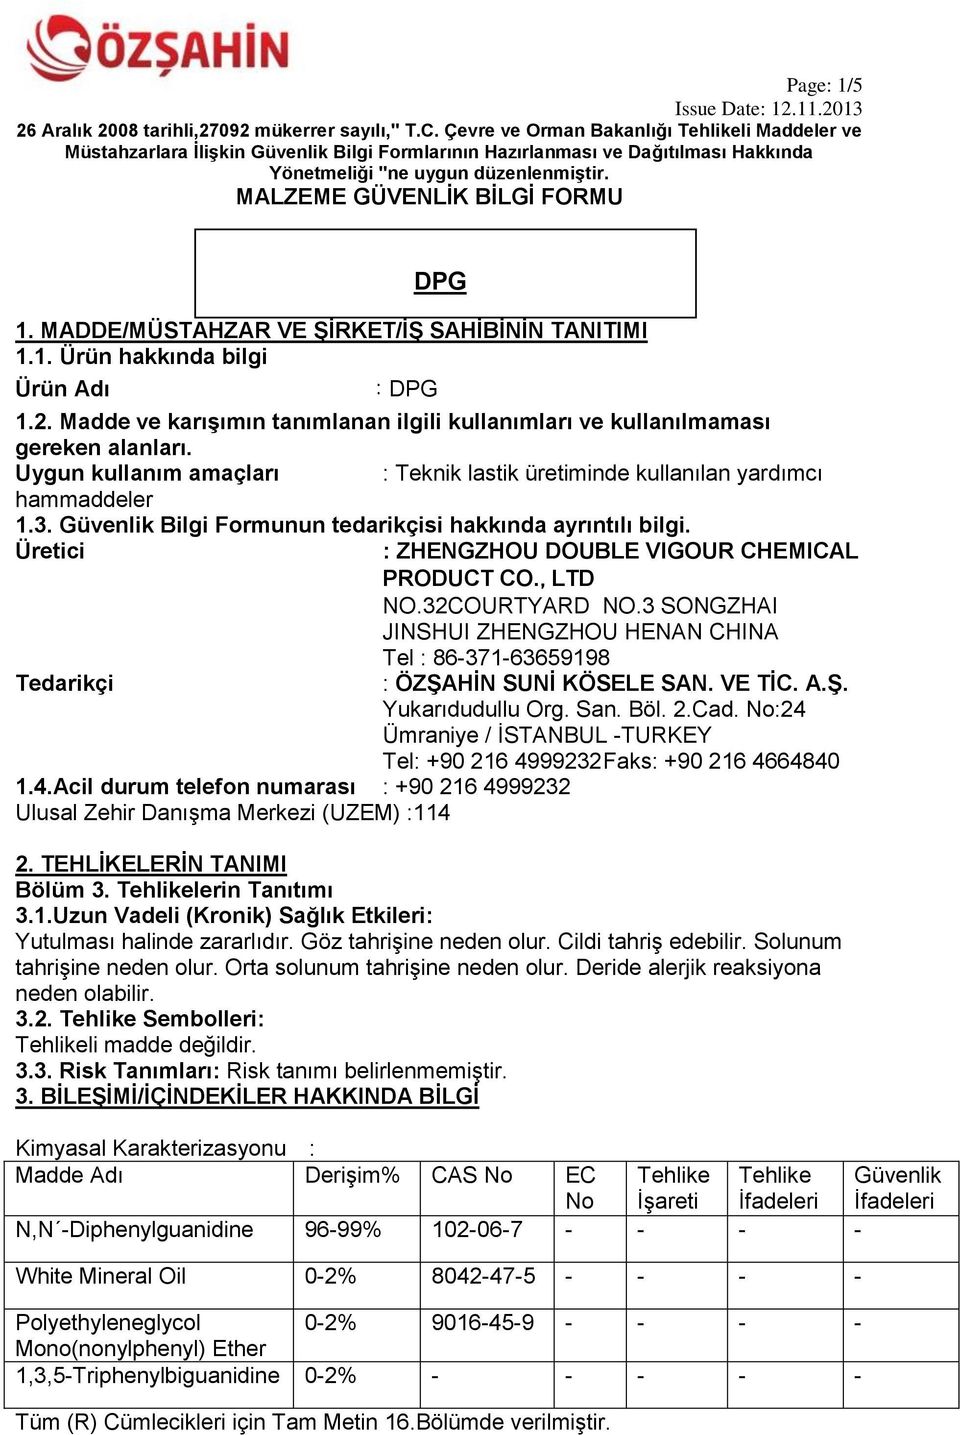 Güvenlik Bilgi Formunun tedarikçisi hakkında ayrıntılı bilgi. Üretici : ZHENGZHOU DOUBLE VIGOUR CHEMICAL PRODUCT CO.,LTD NO.32COURTYARD NO.